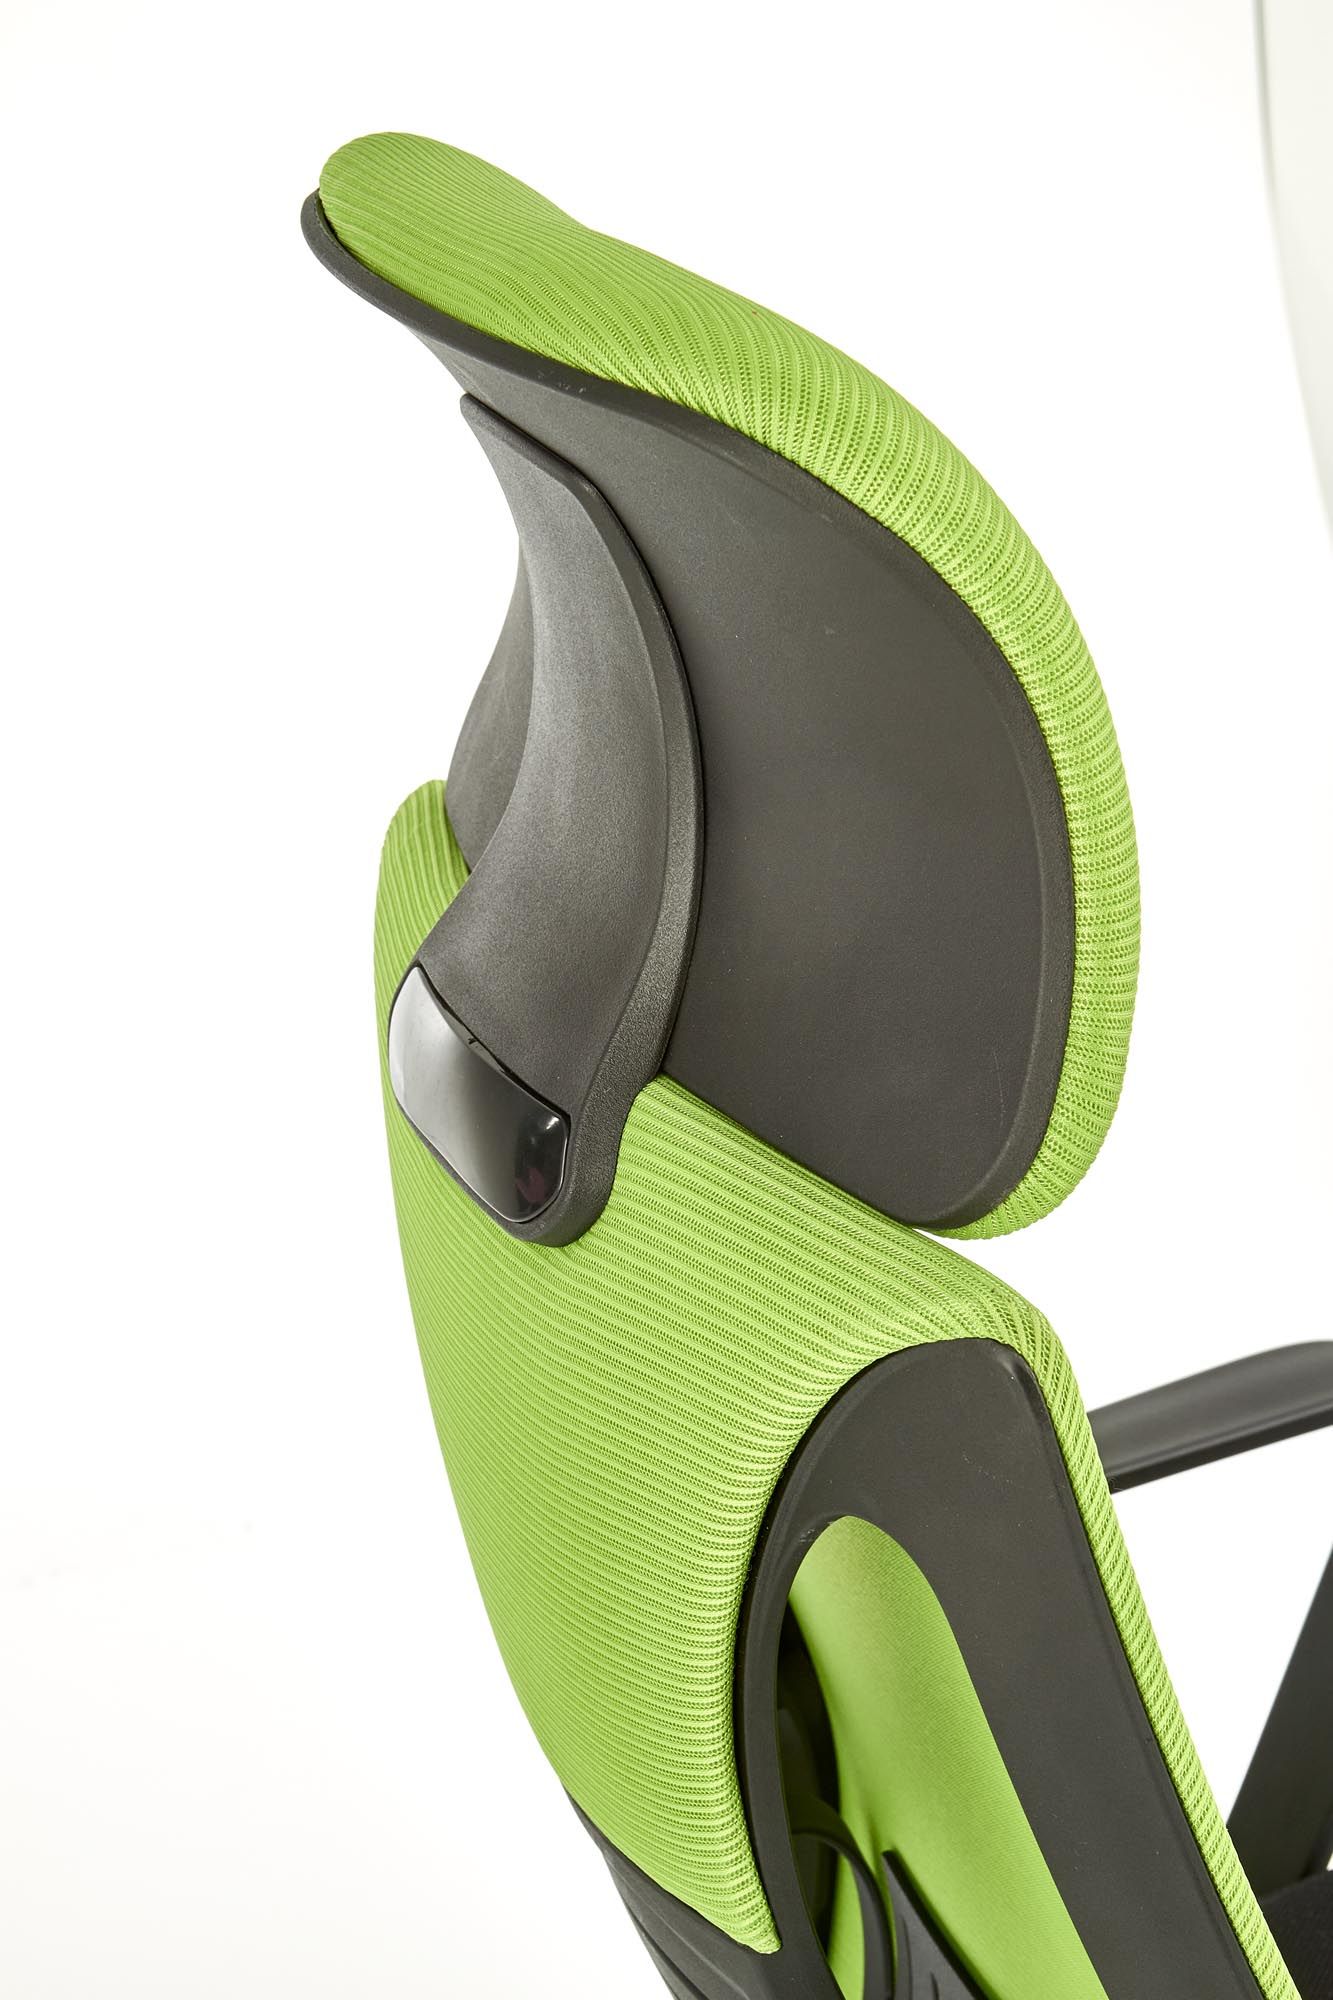 кресло компьютерное halmar valdez, зеленый - черный